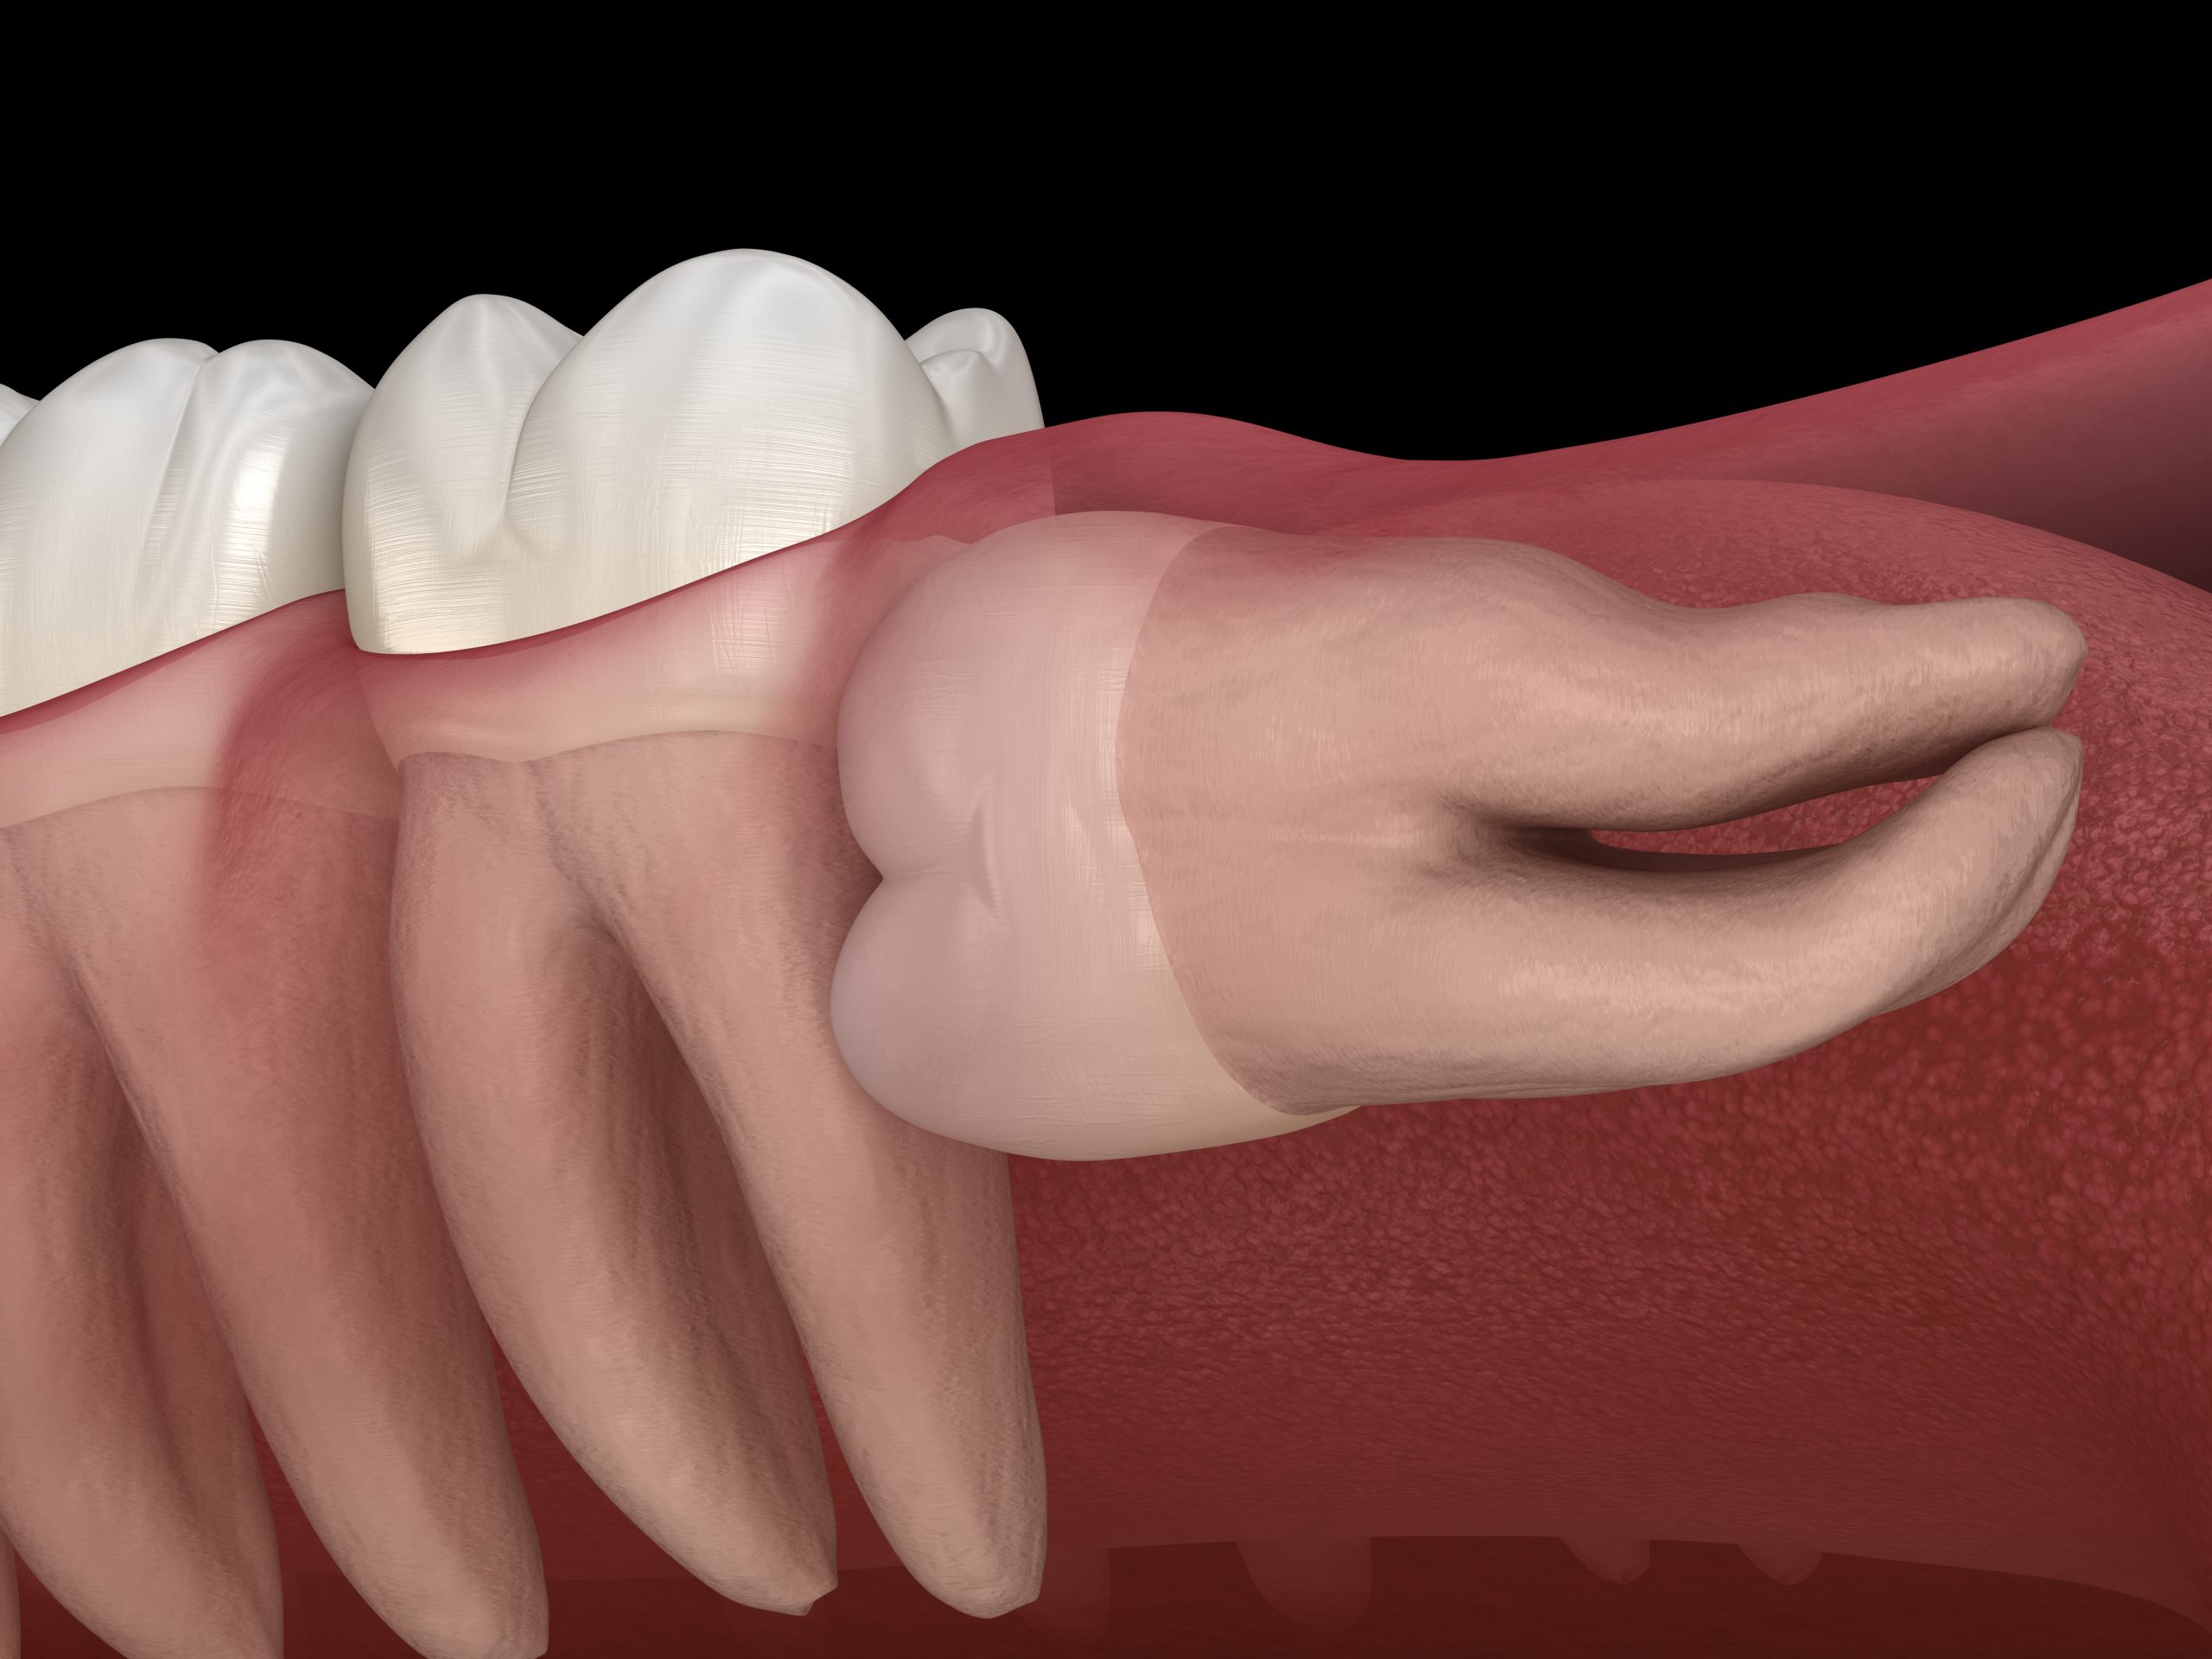 دندان عقل نهفته کج طوری که رشد آن از ناحیه تاج به سمت ریشه دندان 7 است